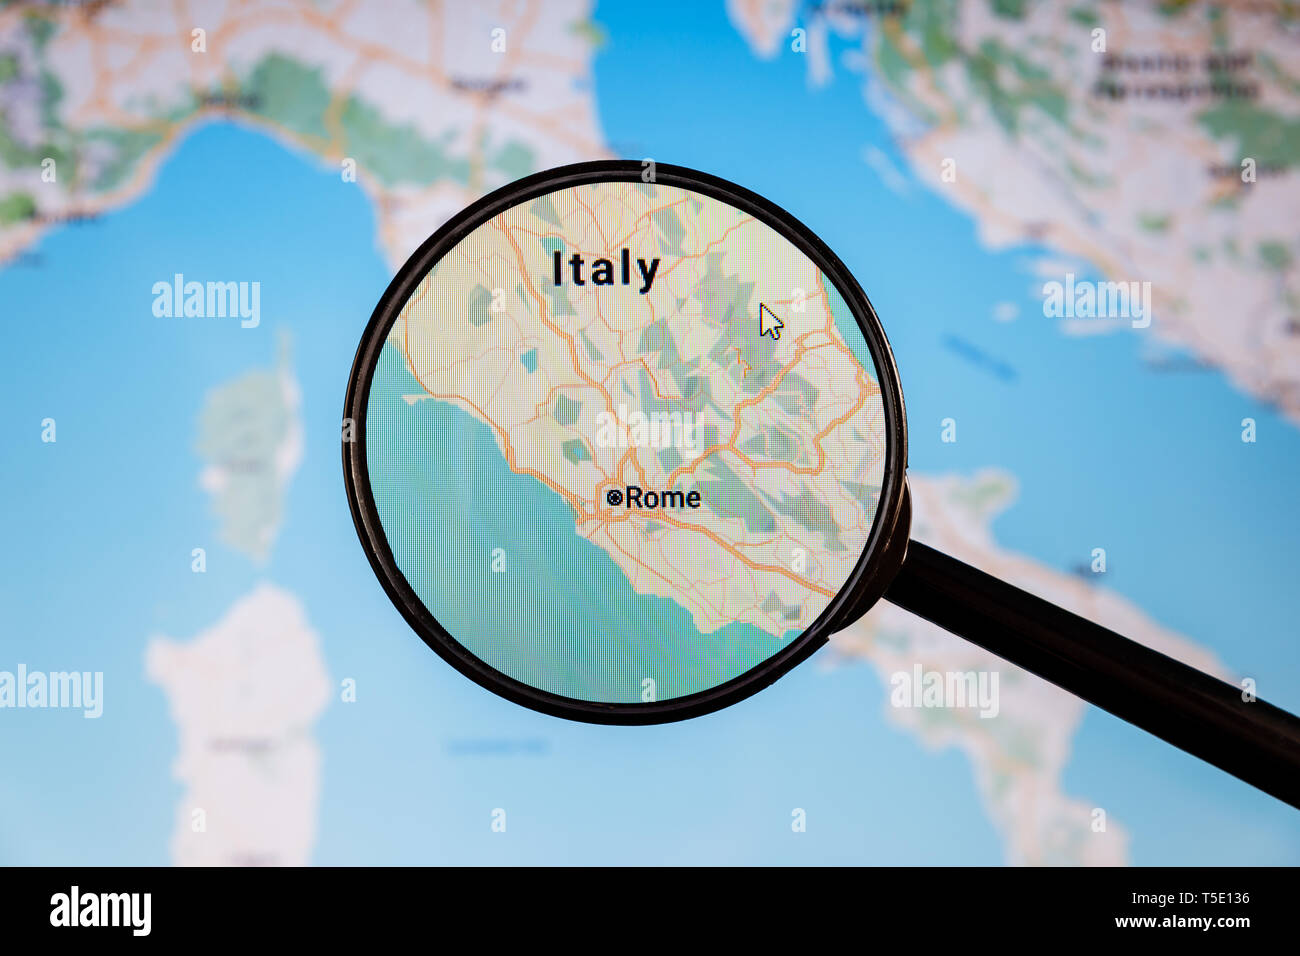 Rome, Italie. Une carte politique. Concept d'illustration de visualisation de la ville sur l'écran grâce à une loupe. Banque D'Images